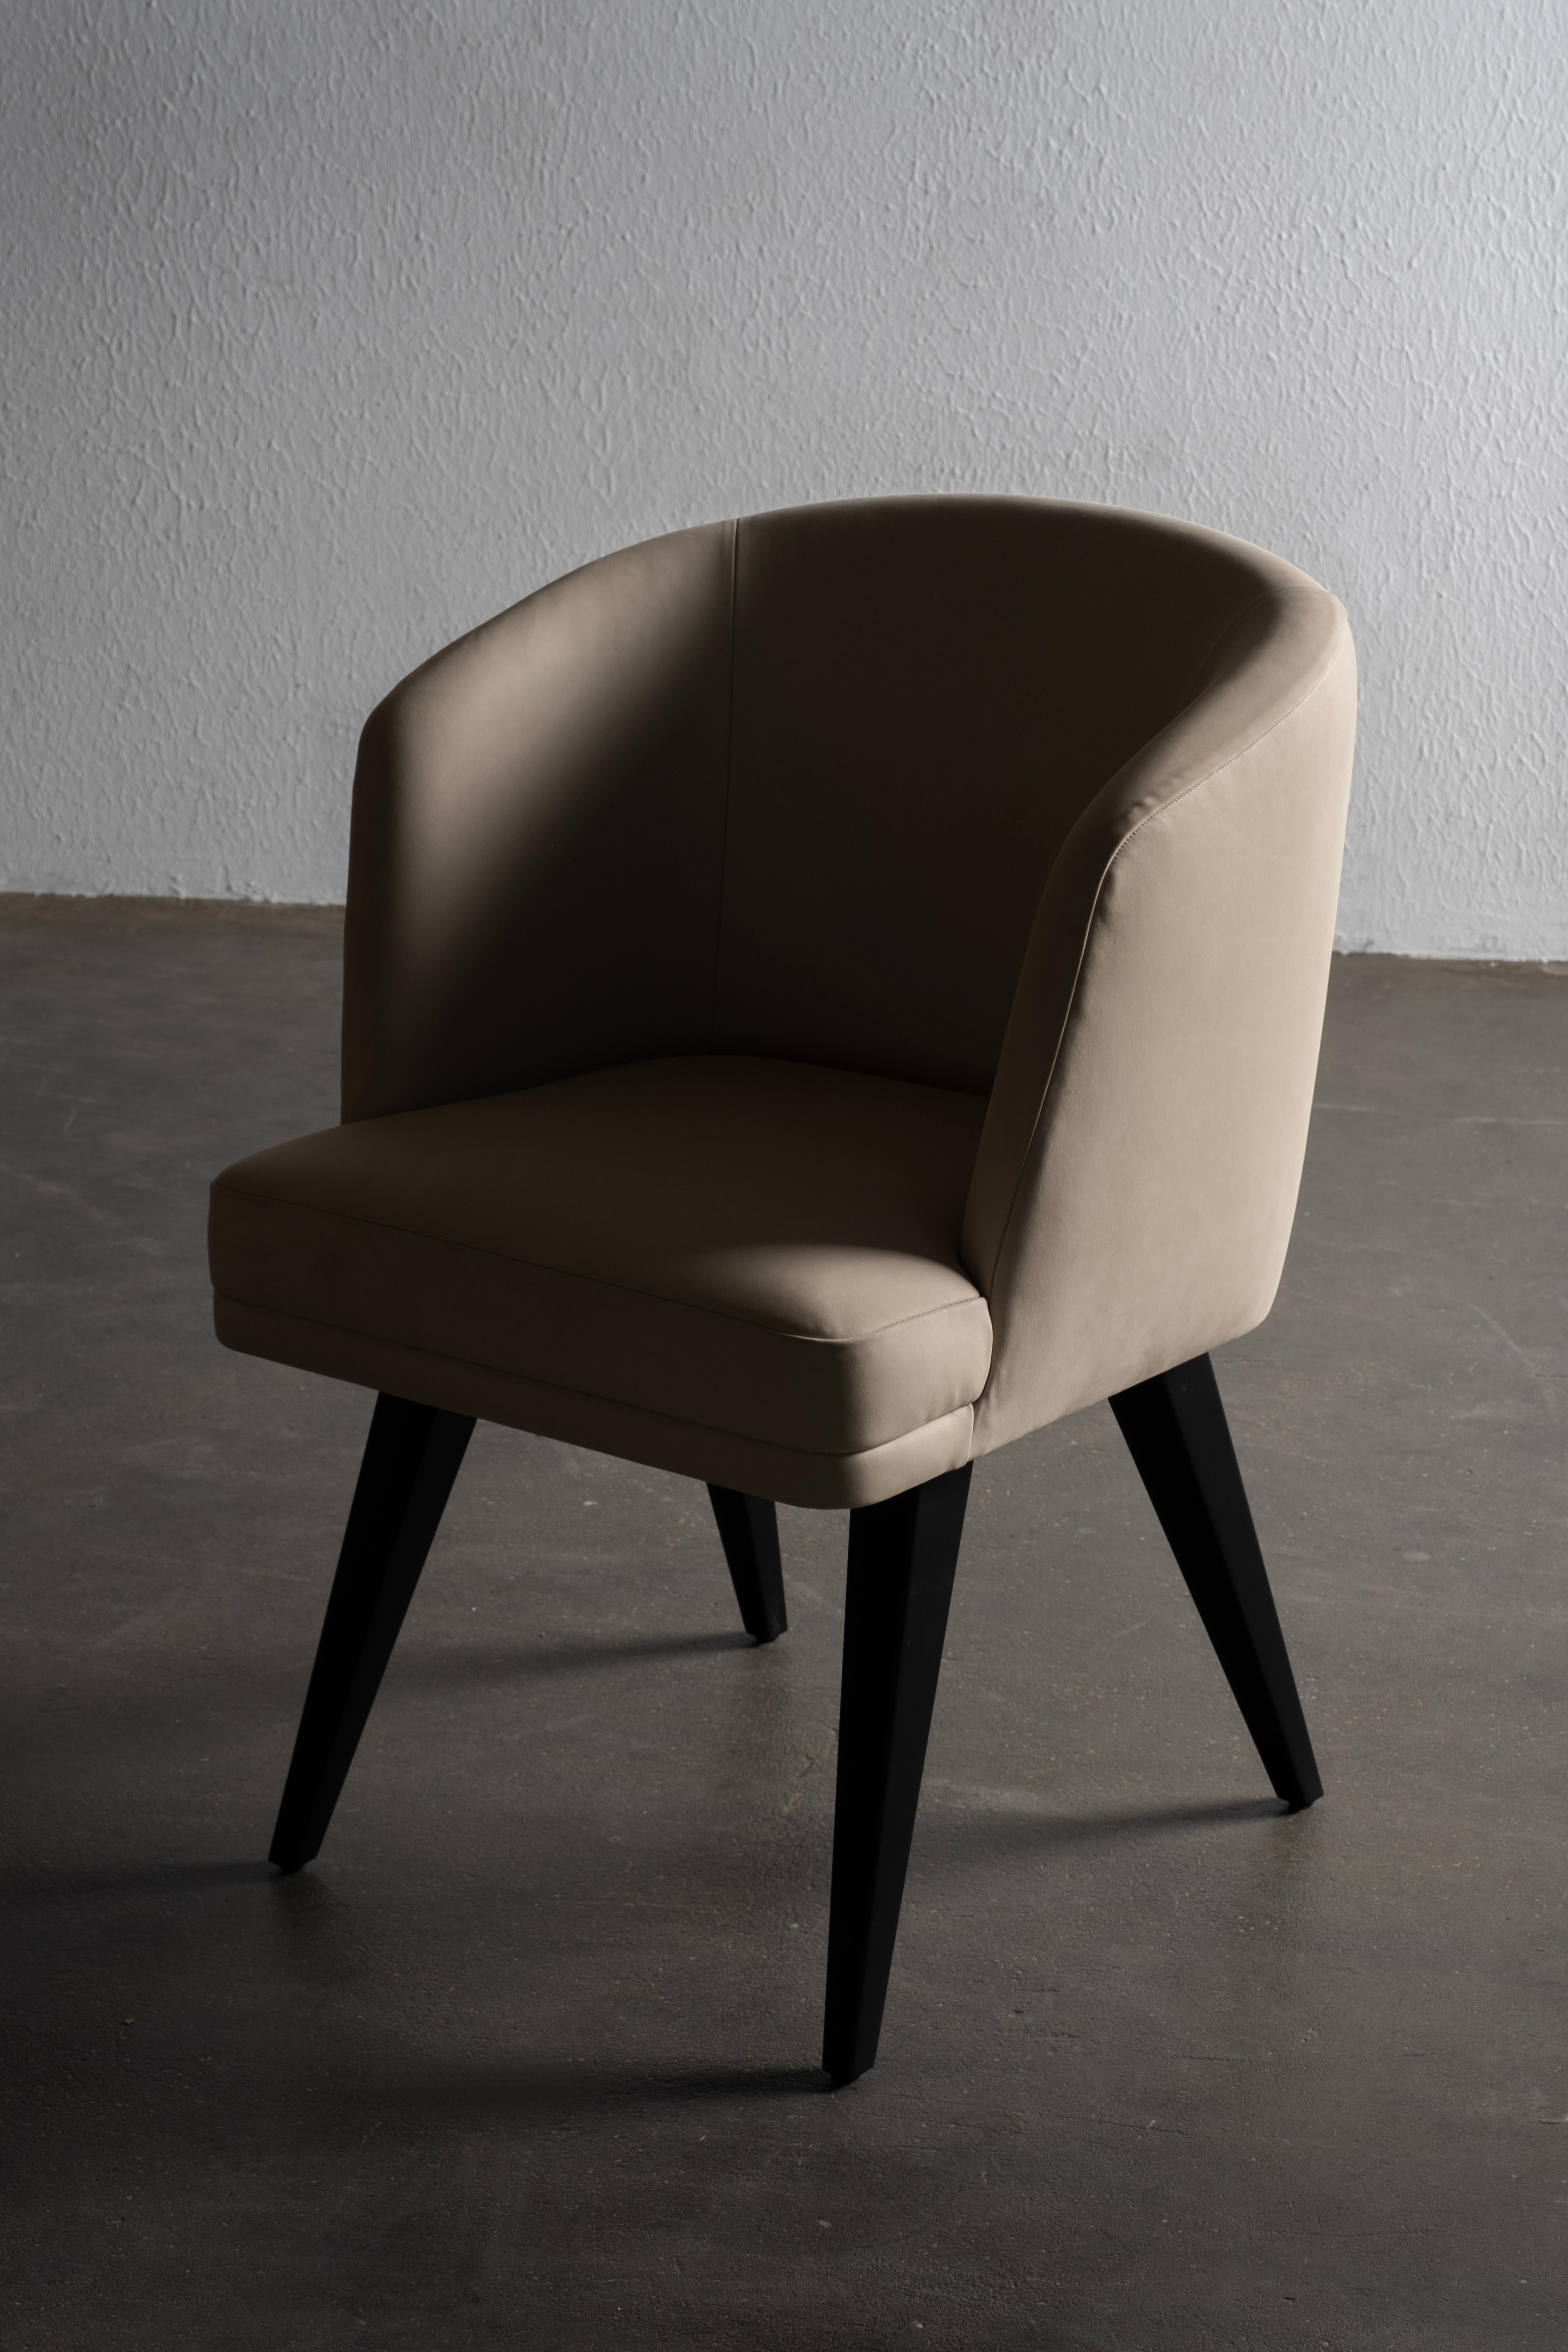 Eleanor Chair, Contemporary Collection, Handcrafted in Portugal - Europe by Greenapple.

La chaise de salle à manger en cuir Eleanor, baptisée en l'honneur de la reine Eleanor d'Avis, incarne toutes les vertus de son inspiratrice. Tapissée de tissus